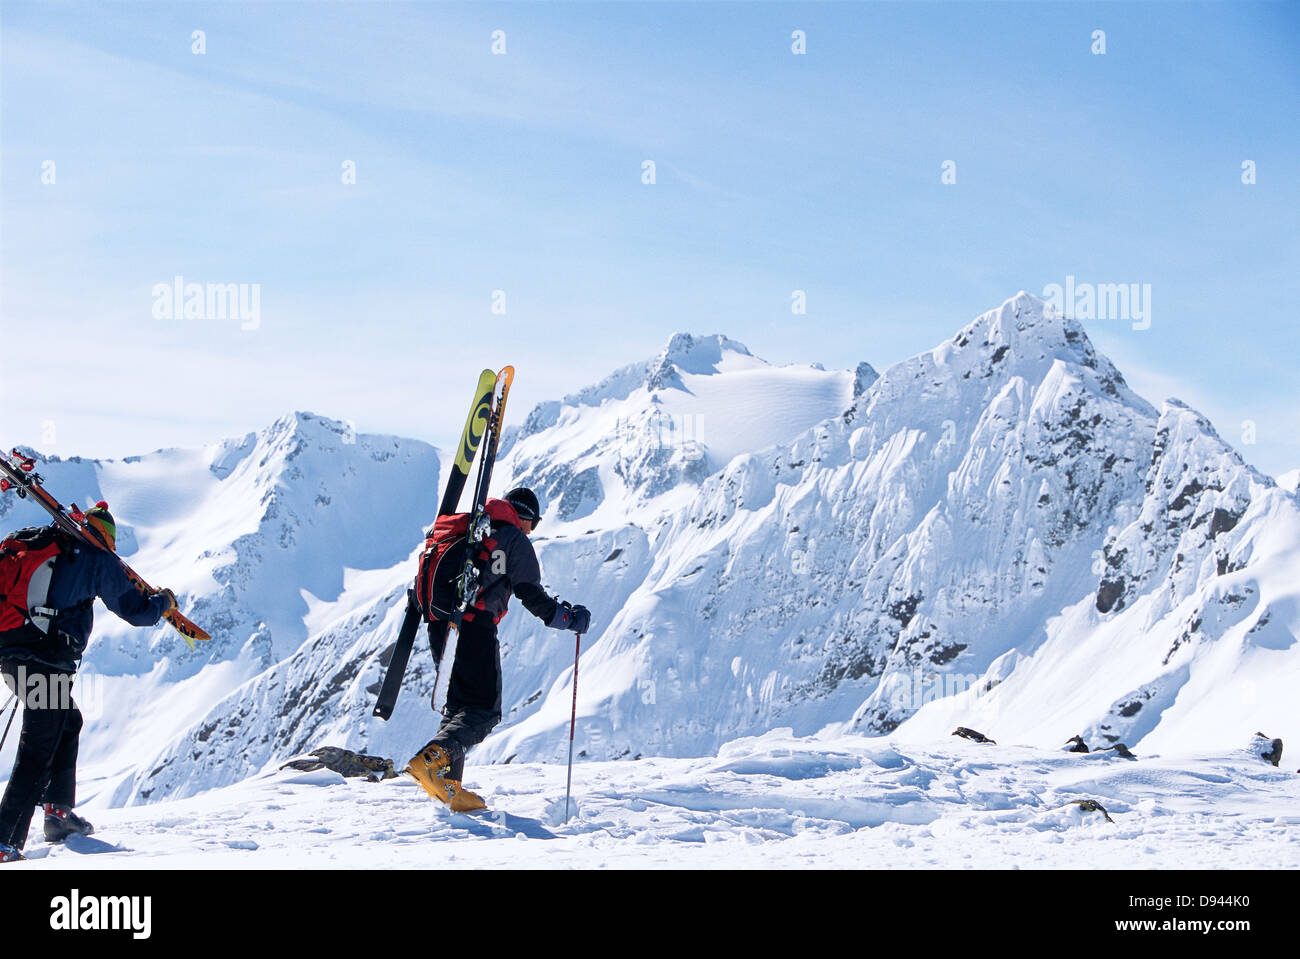 Two skiers walking towards the top, St:Anton, Austria. Stock Photo